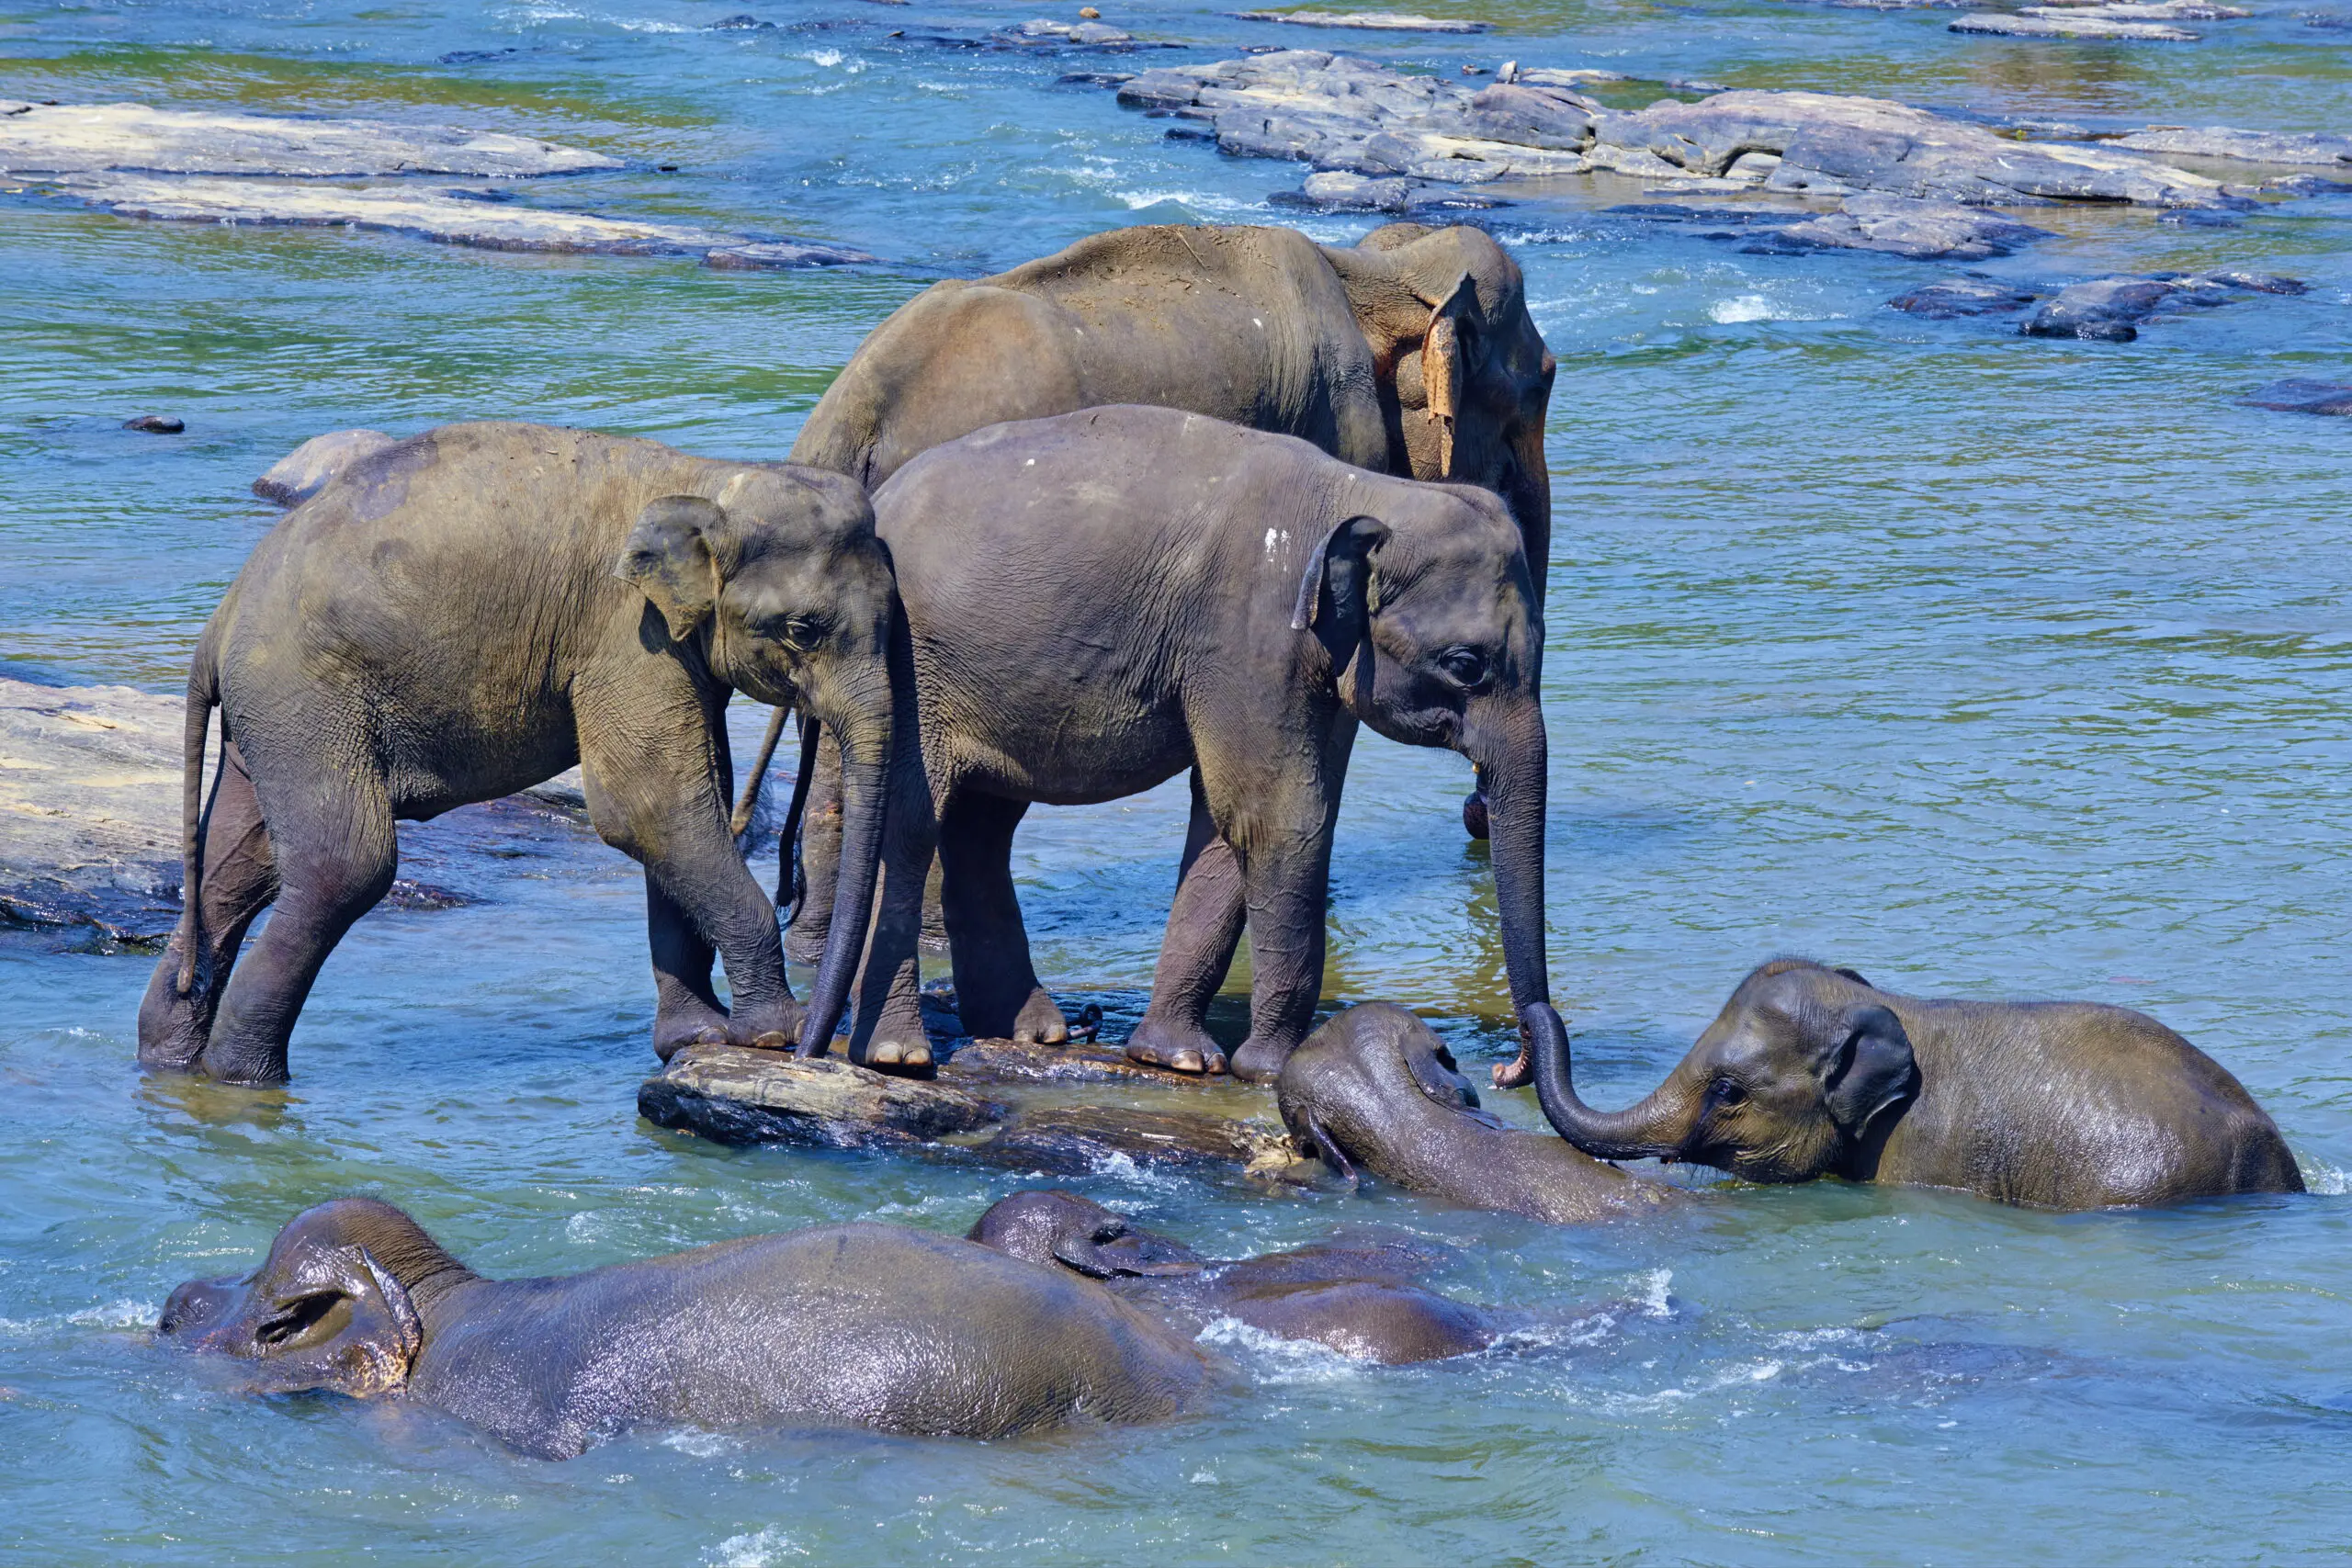 Wandbild (4595) Morandi Bruno – elephant bath präsentiert: Wasser,Tiere,Natur,Sonstige Tiere,Wildtiere,Bäche und Flüsse,Seen